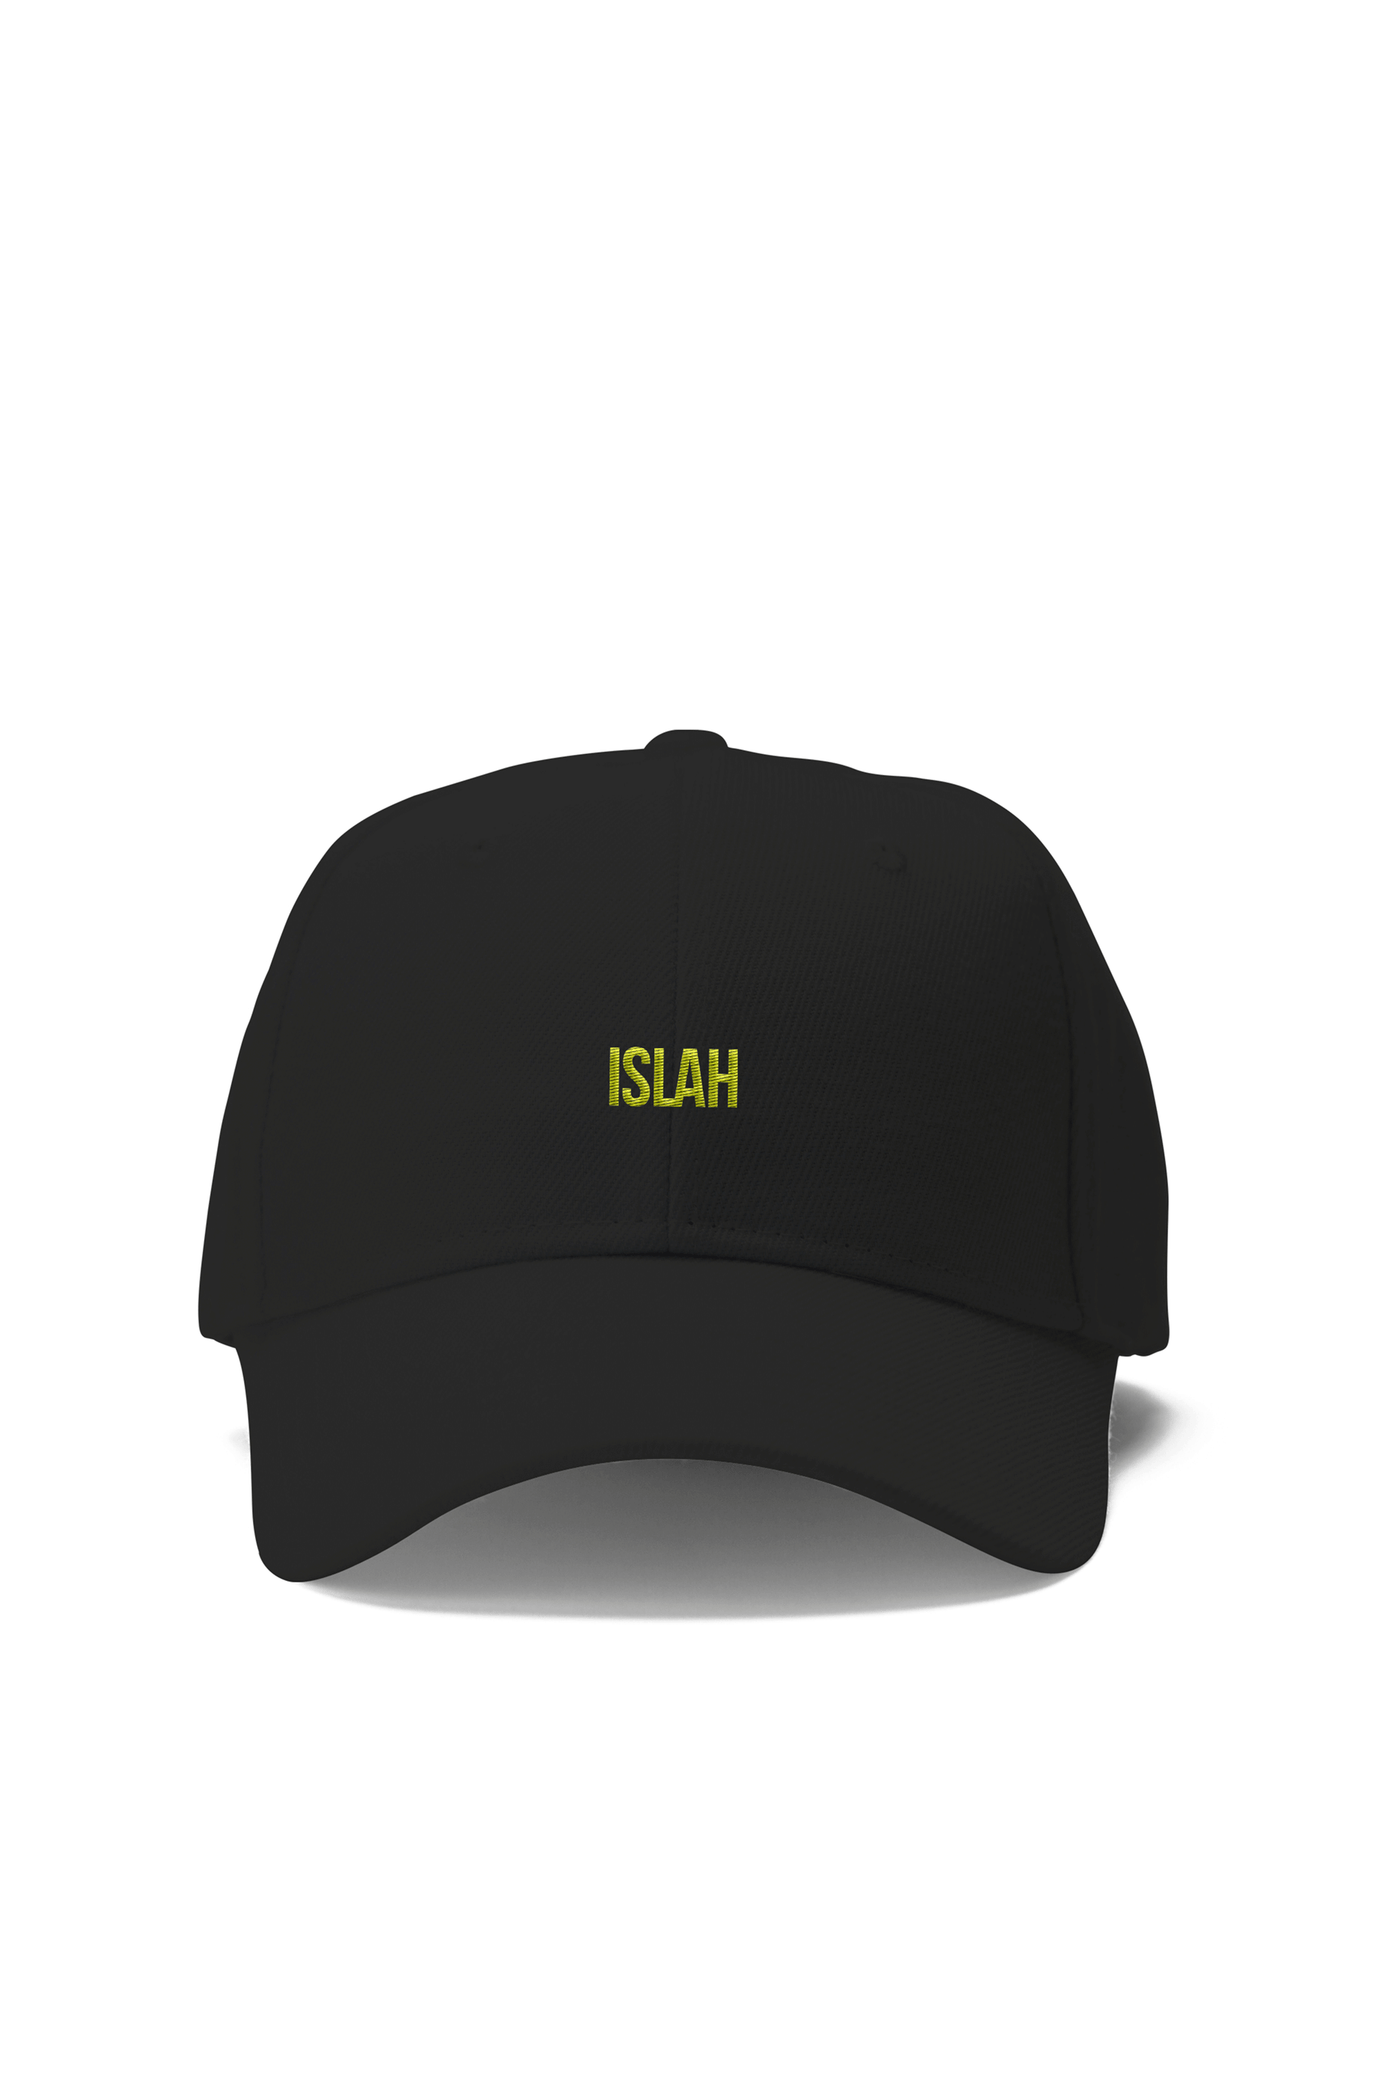 Islah Cap